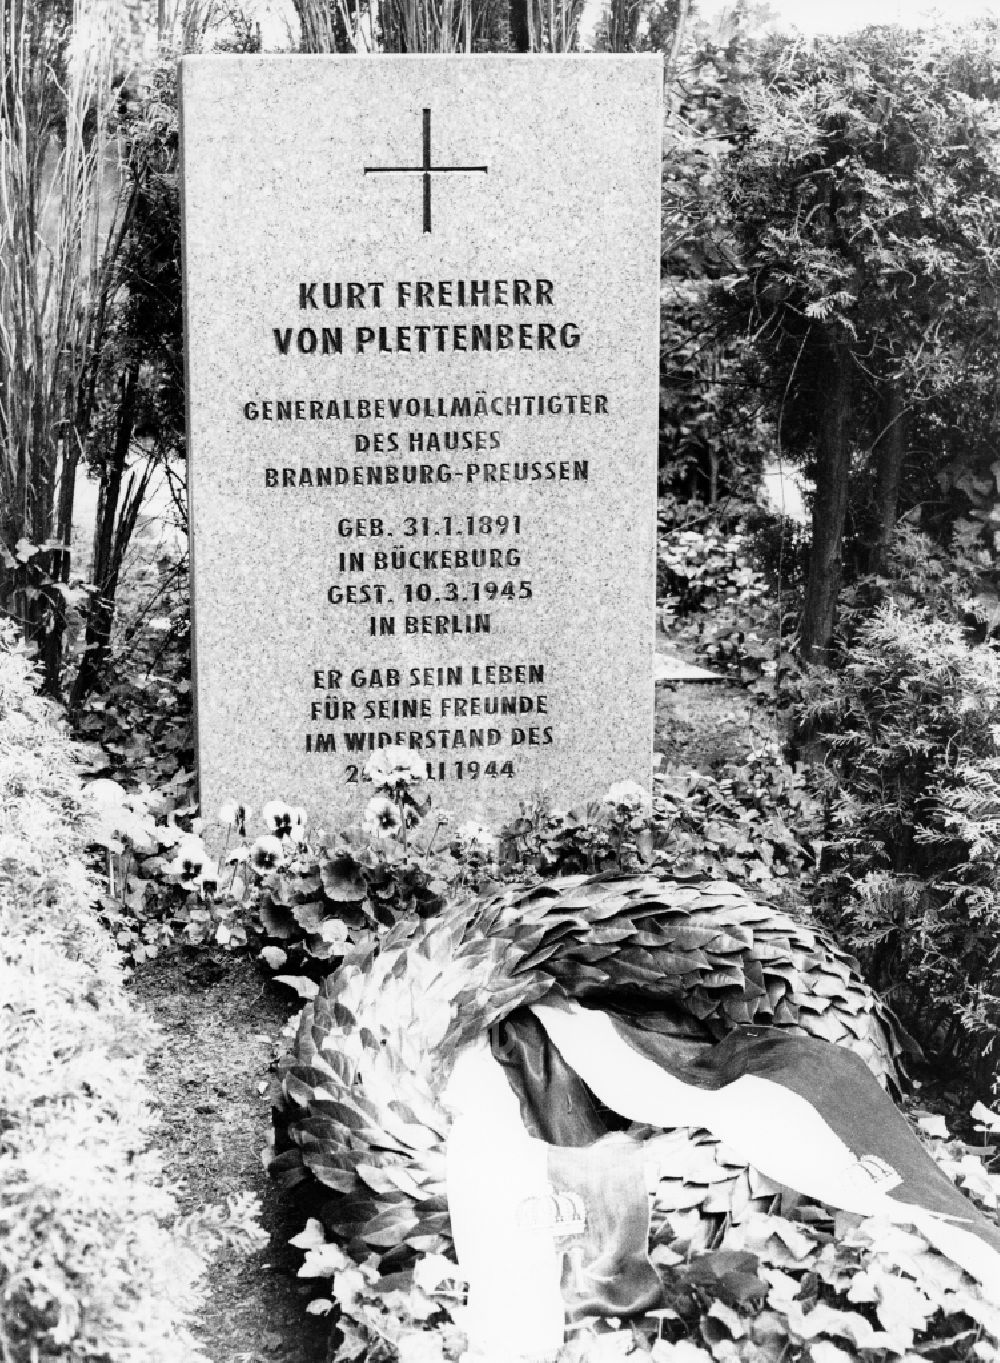 Potsdam: Renewed grave stone for Kurt Freiherr von Plettenberg on the Bornstedter Cemetery in Potsdam in Brandenburg